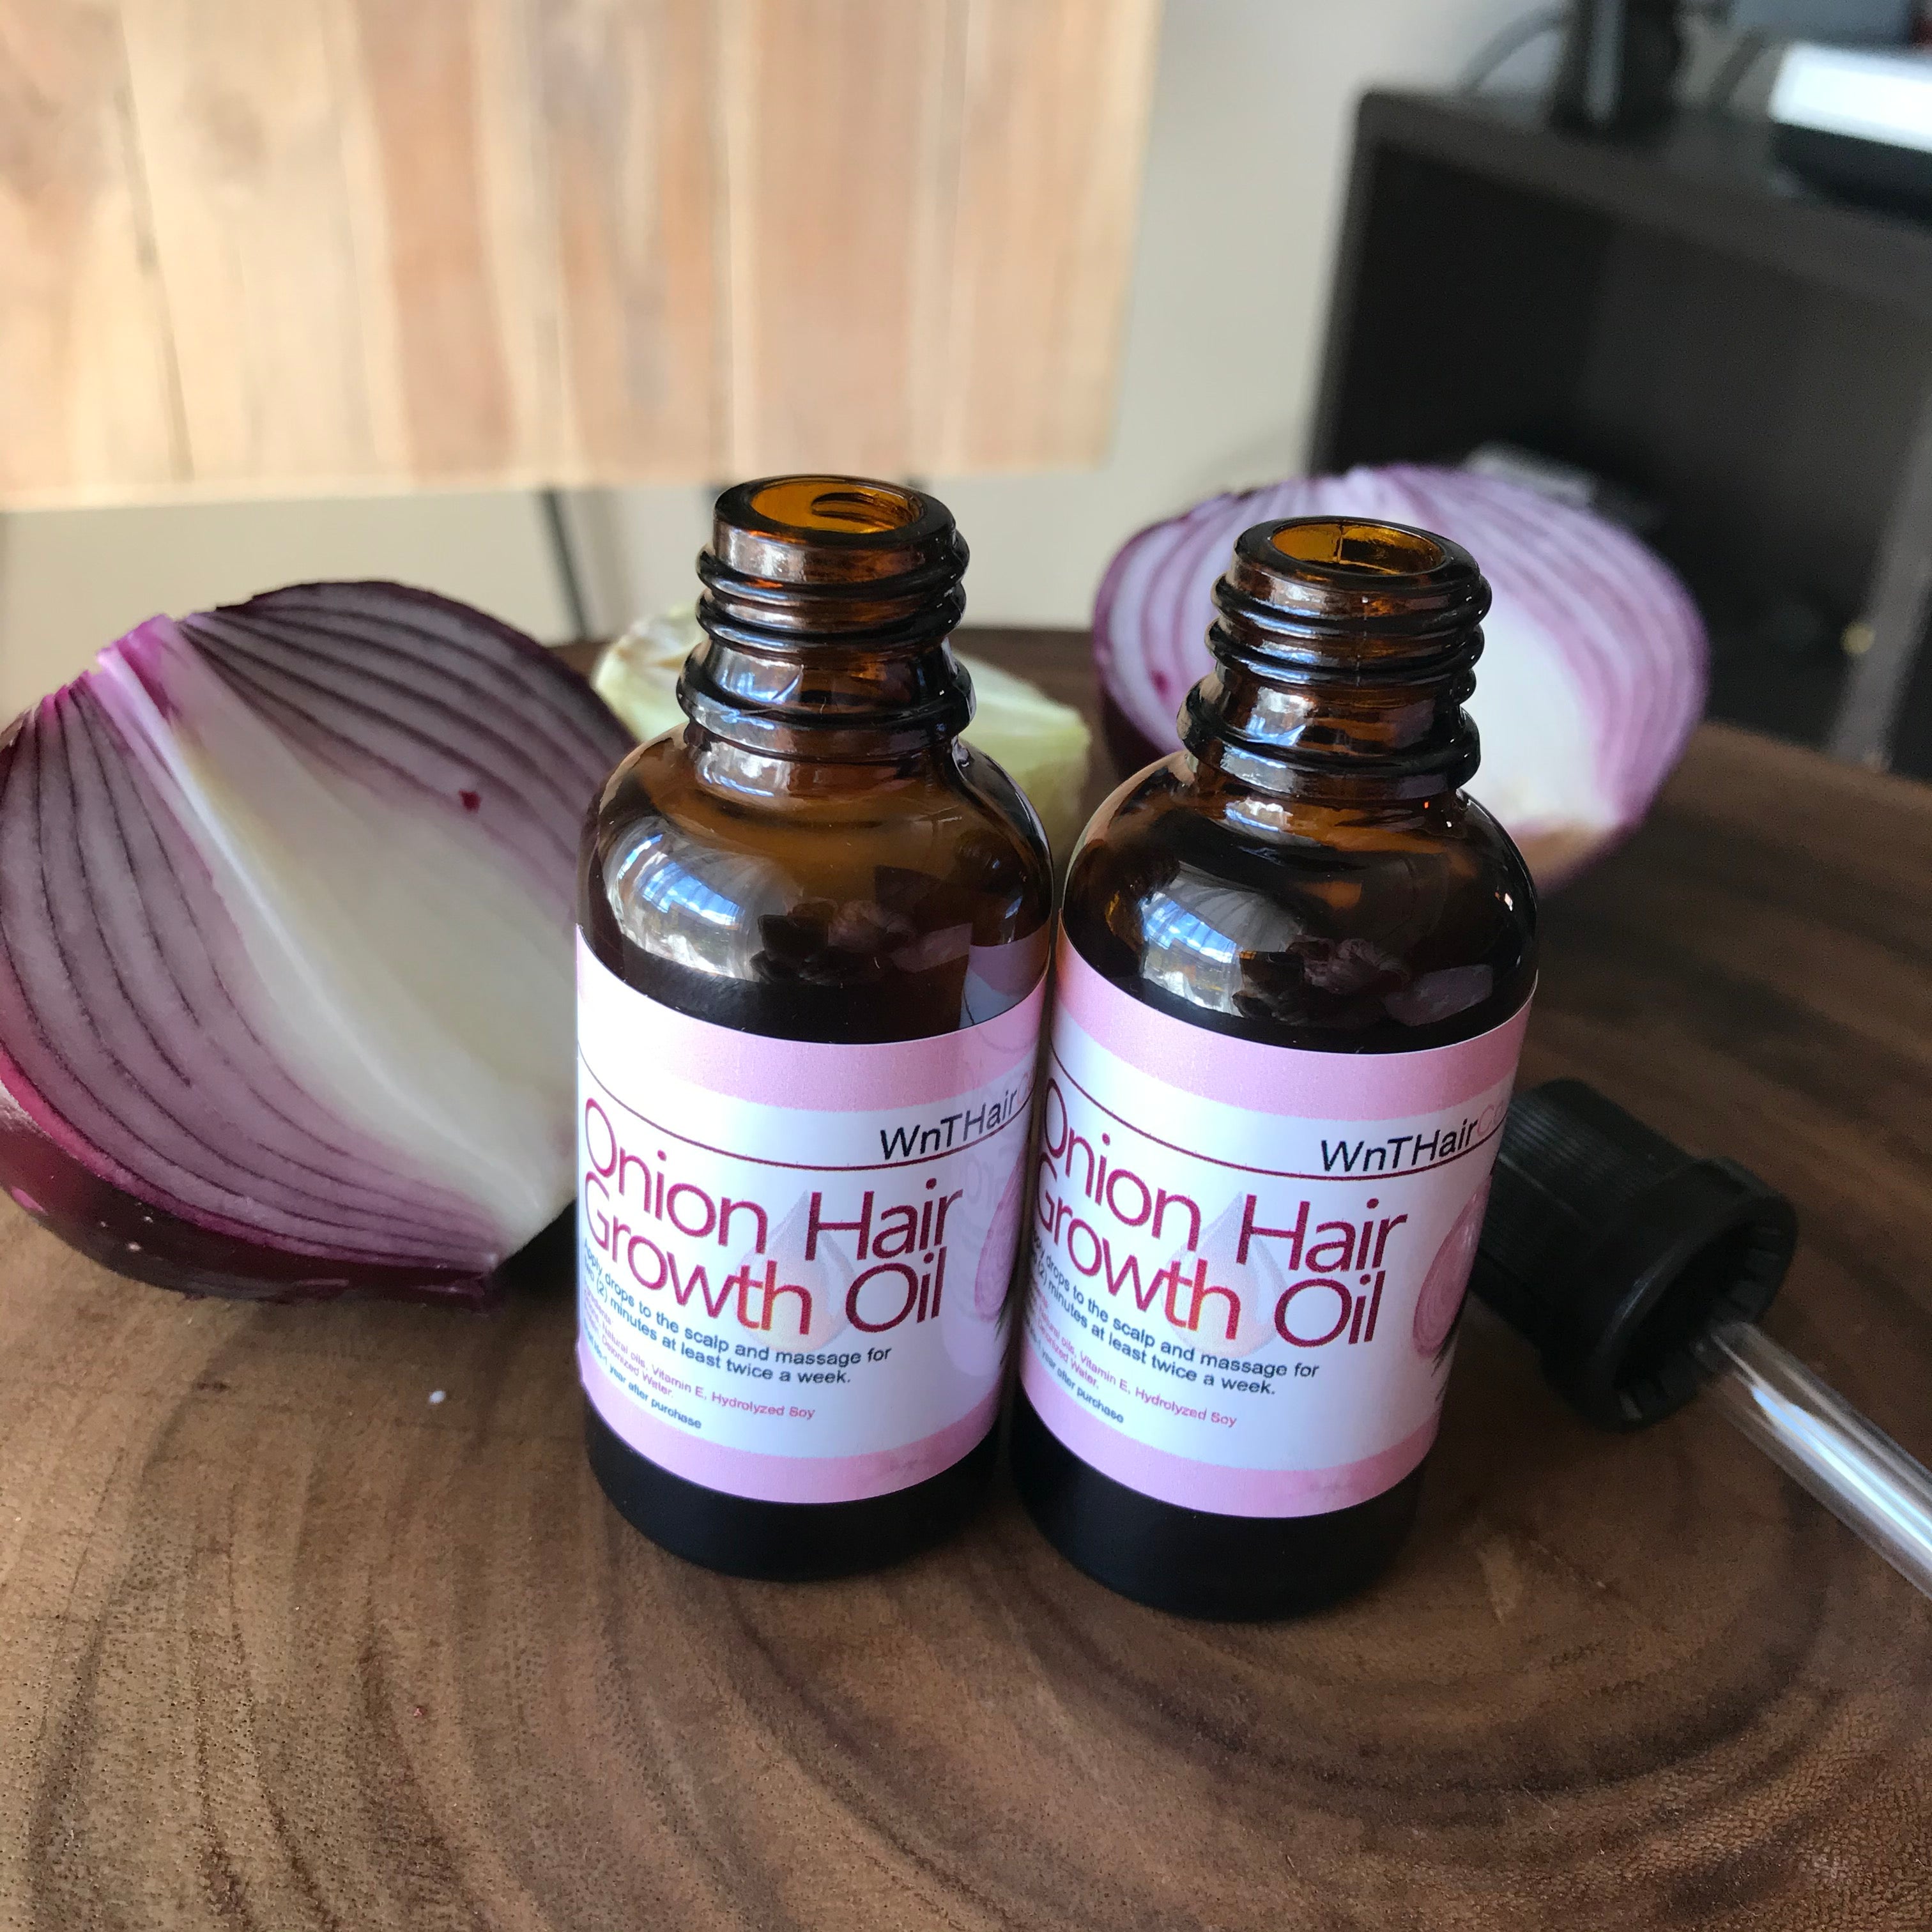 Onion Hair Growth Oil